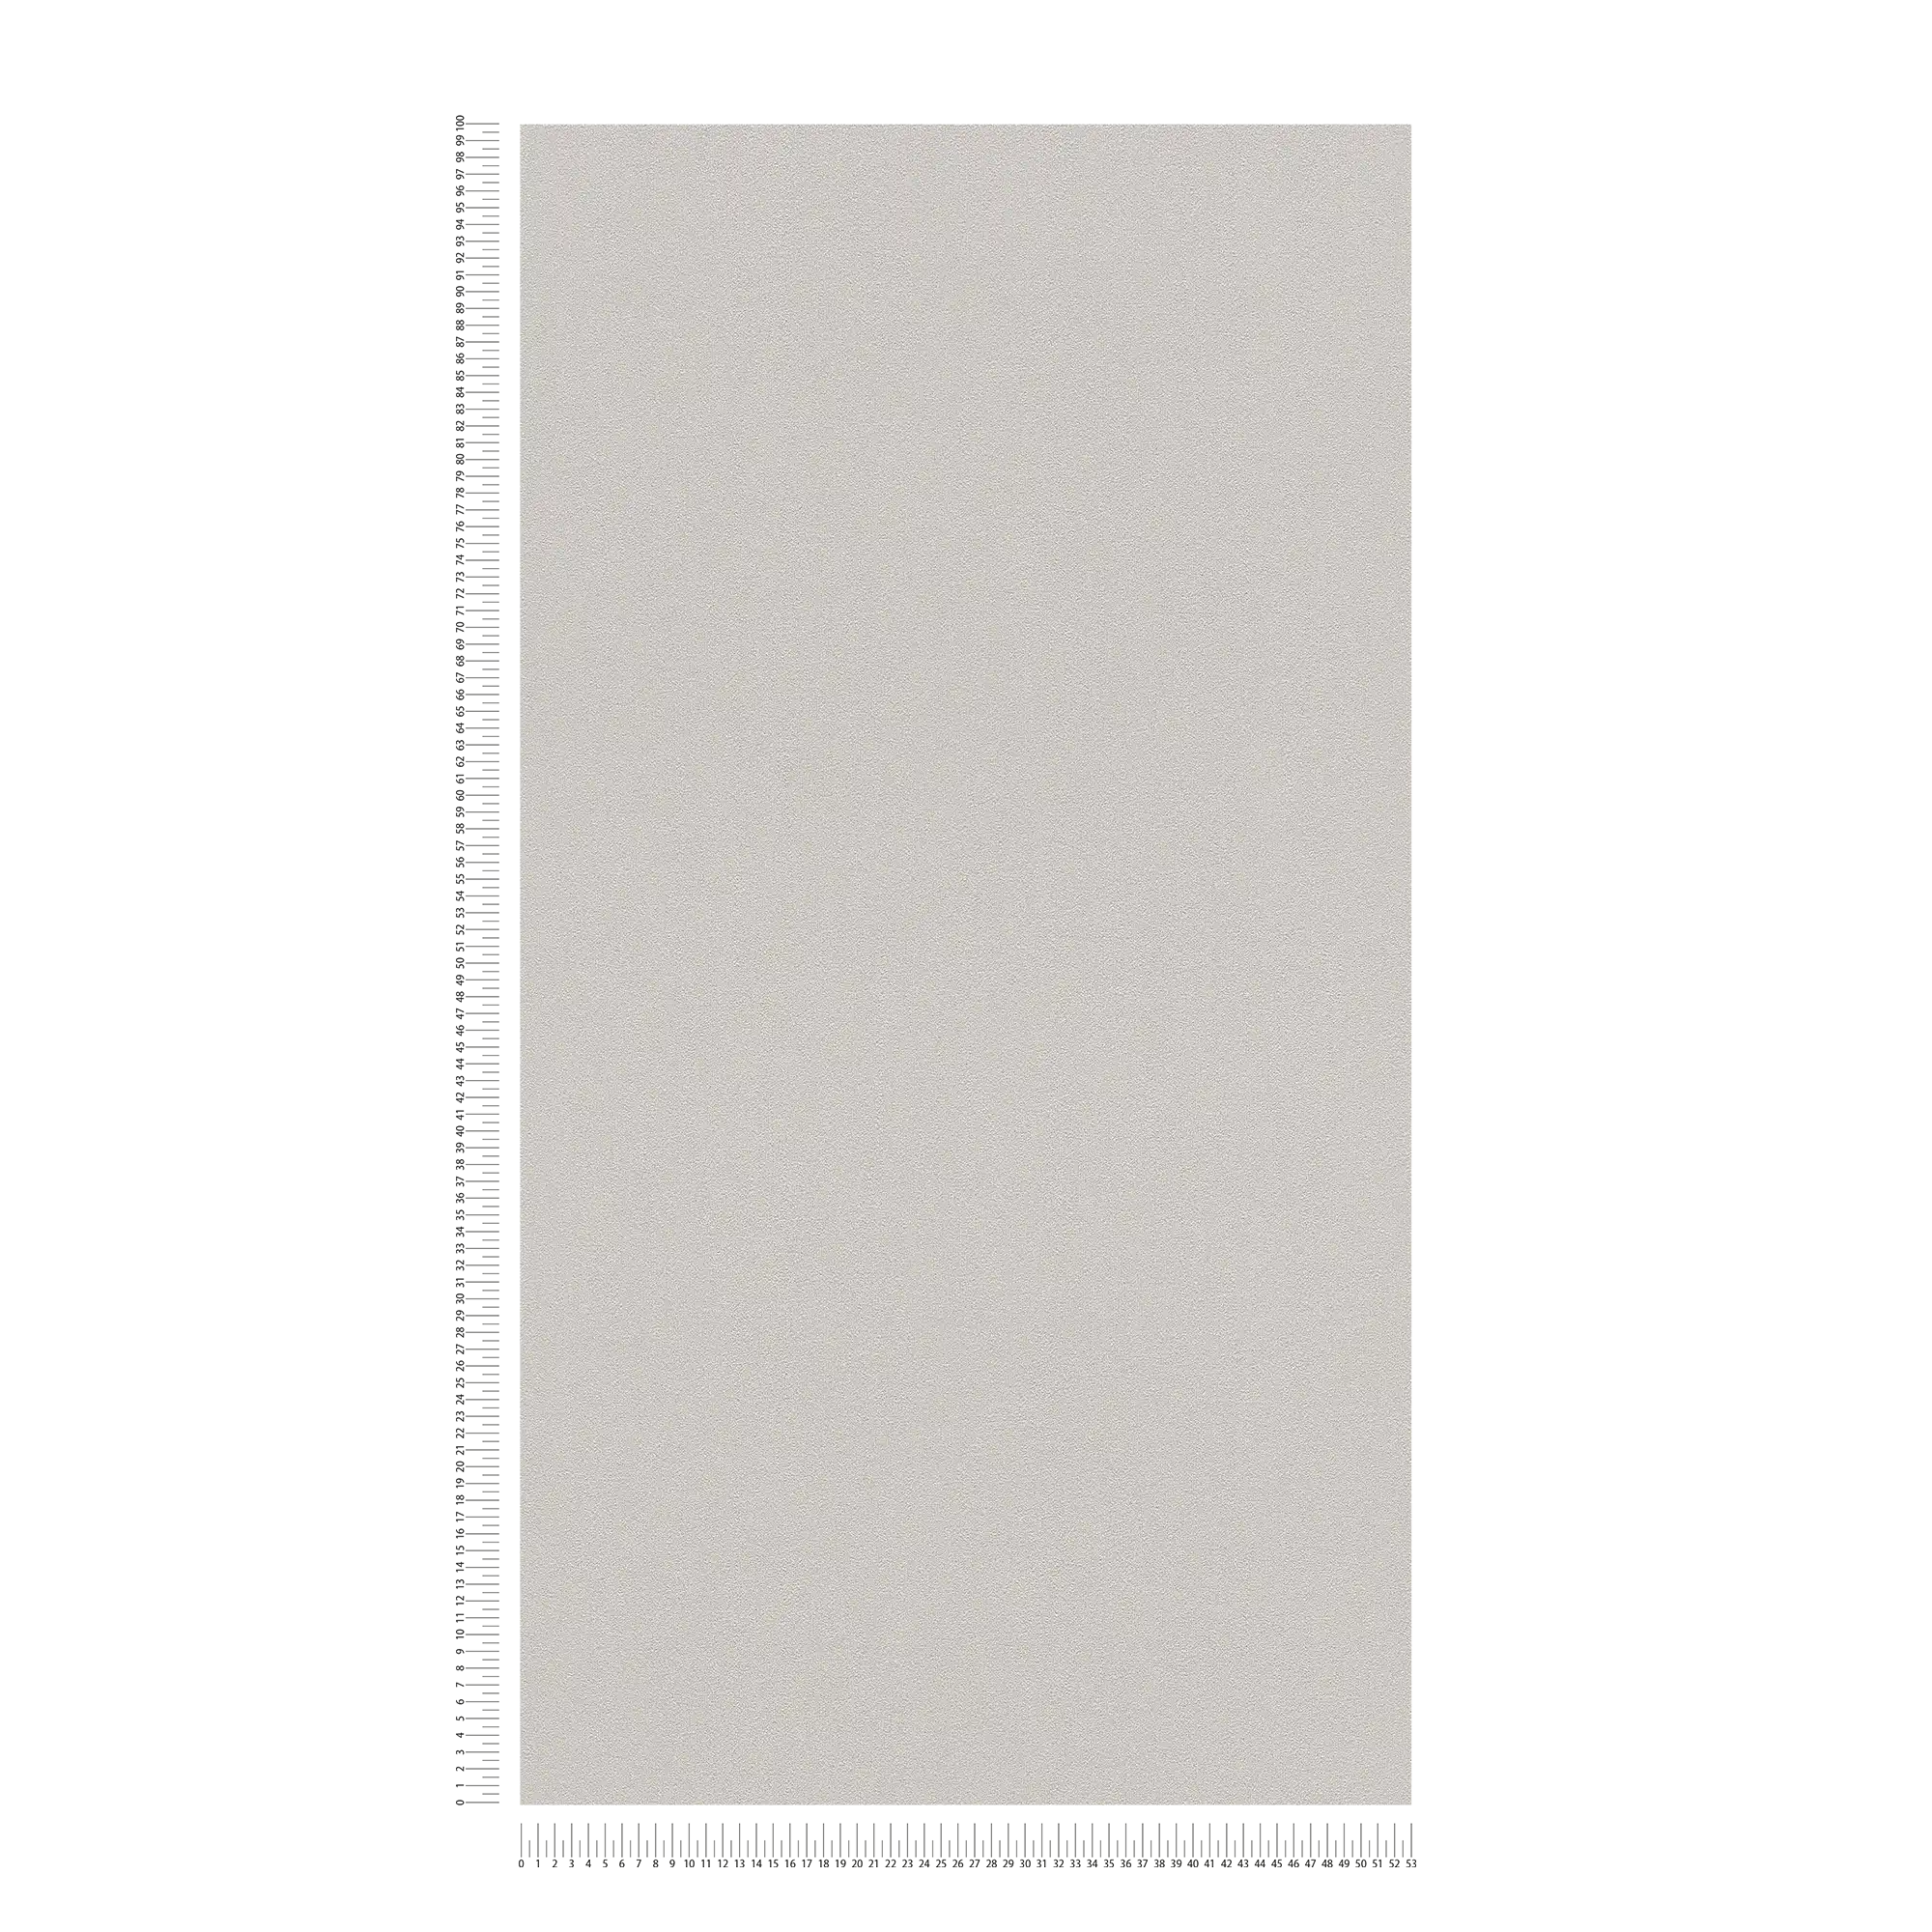             Papier peint Karl LAGERFELD Monochrome & texture gaufrée - Gris
        